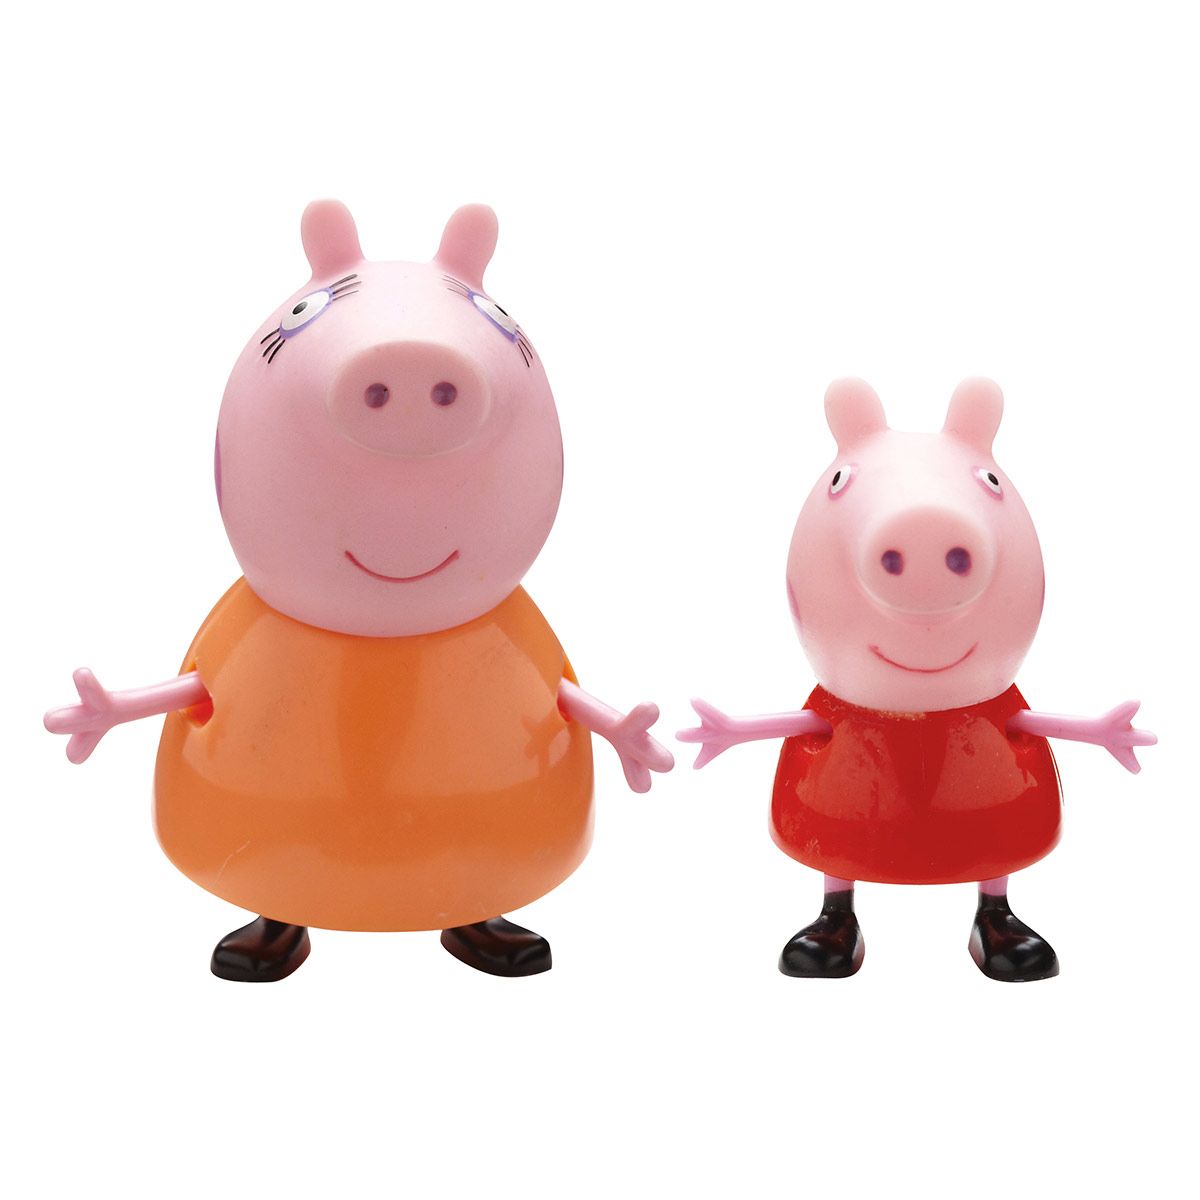 Enfants Jouets Figurines Peppa Pig Figurines Figurine peppa pig 